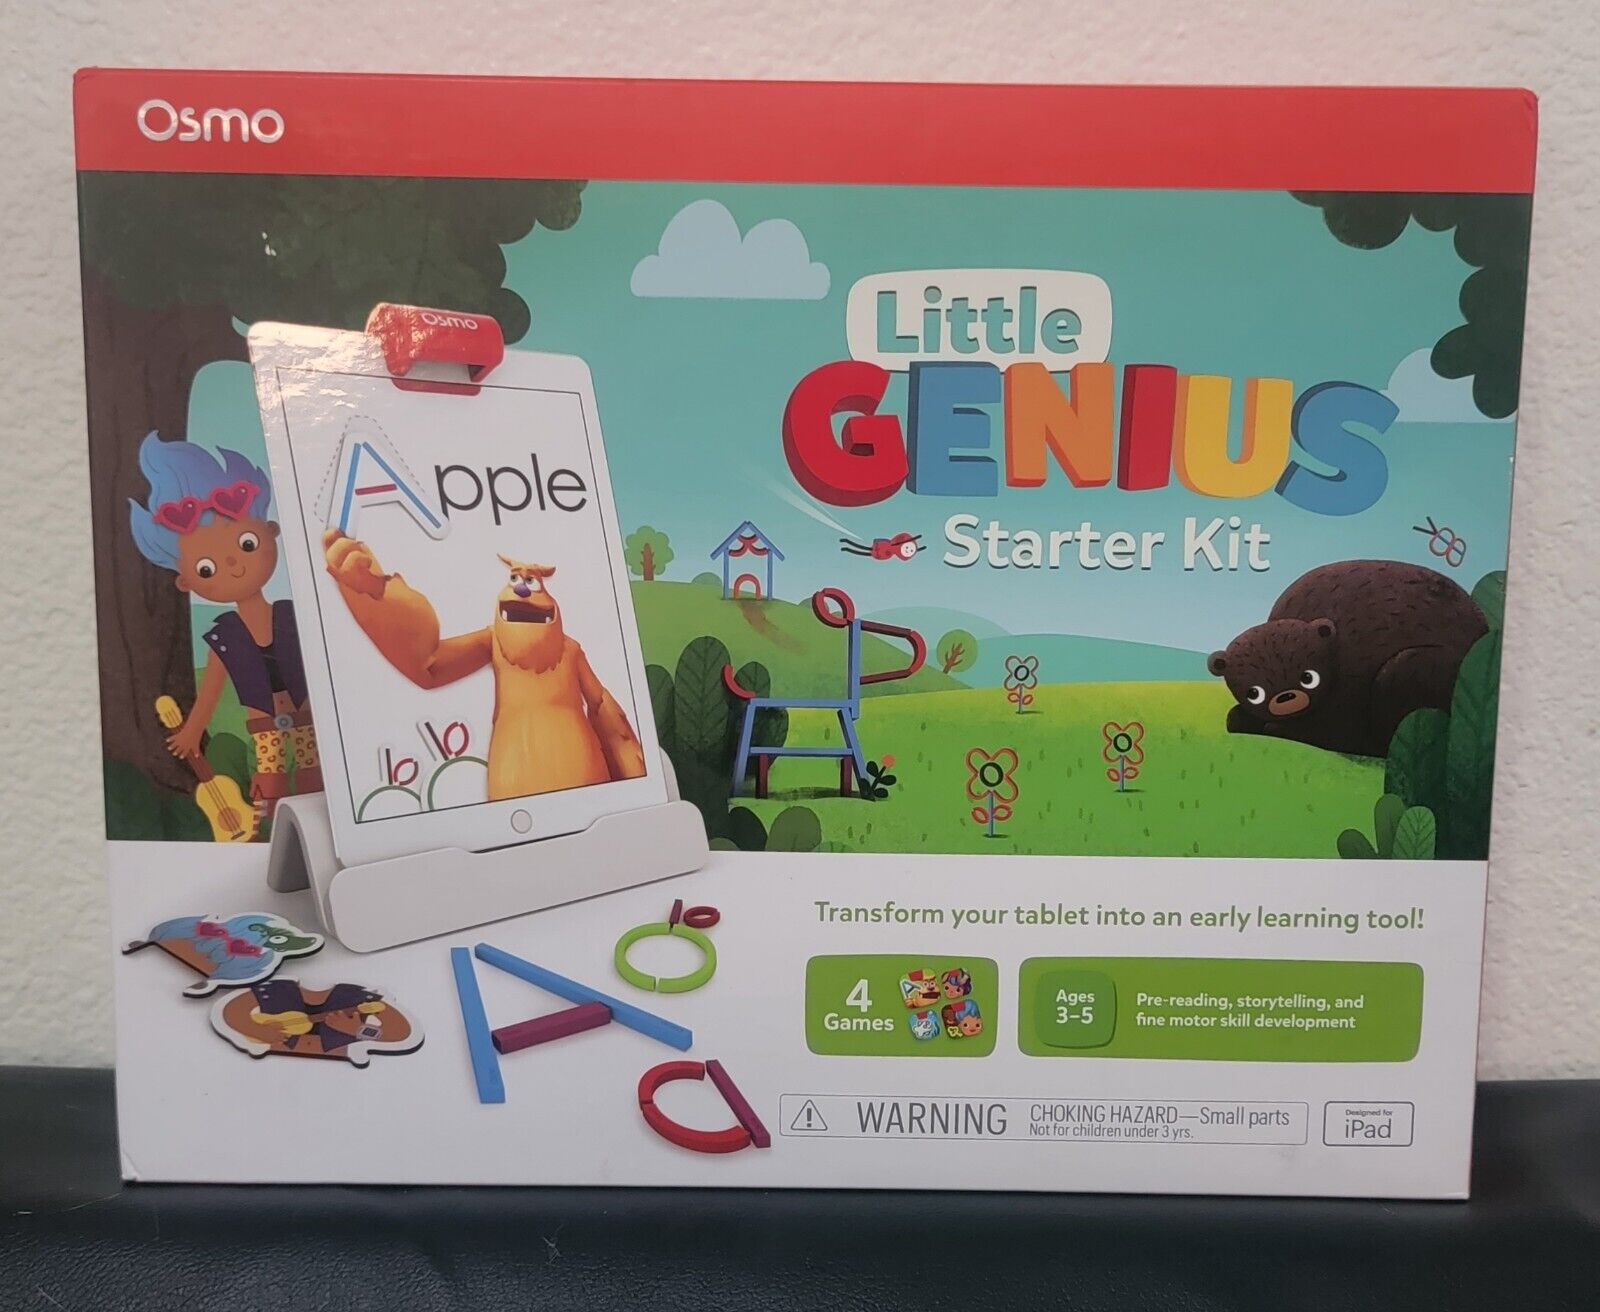 Osmo Little Genius Starter Kit 4 Games for iPad Pre-Reading Storytelling 3-5 New